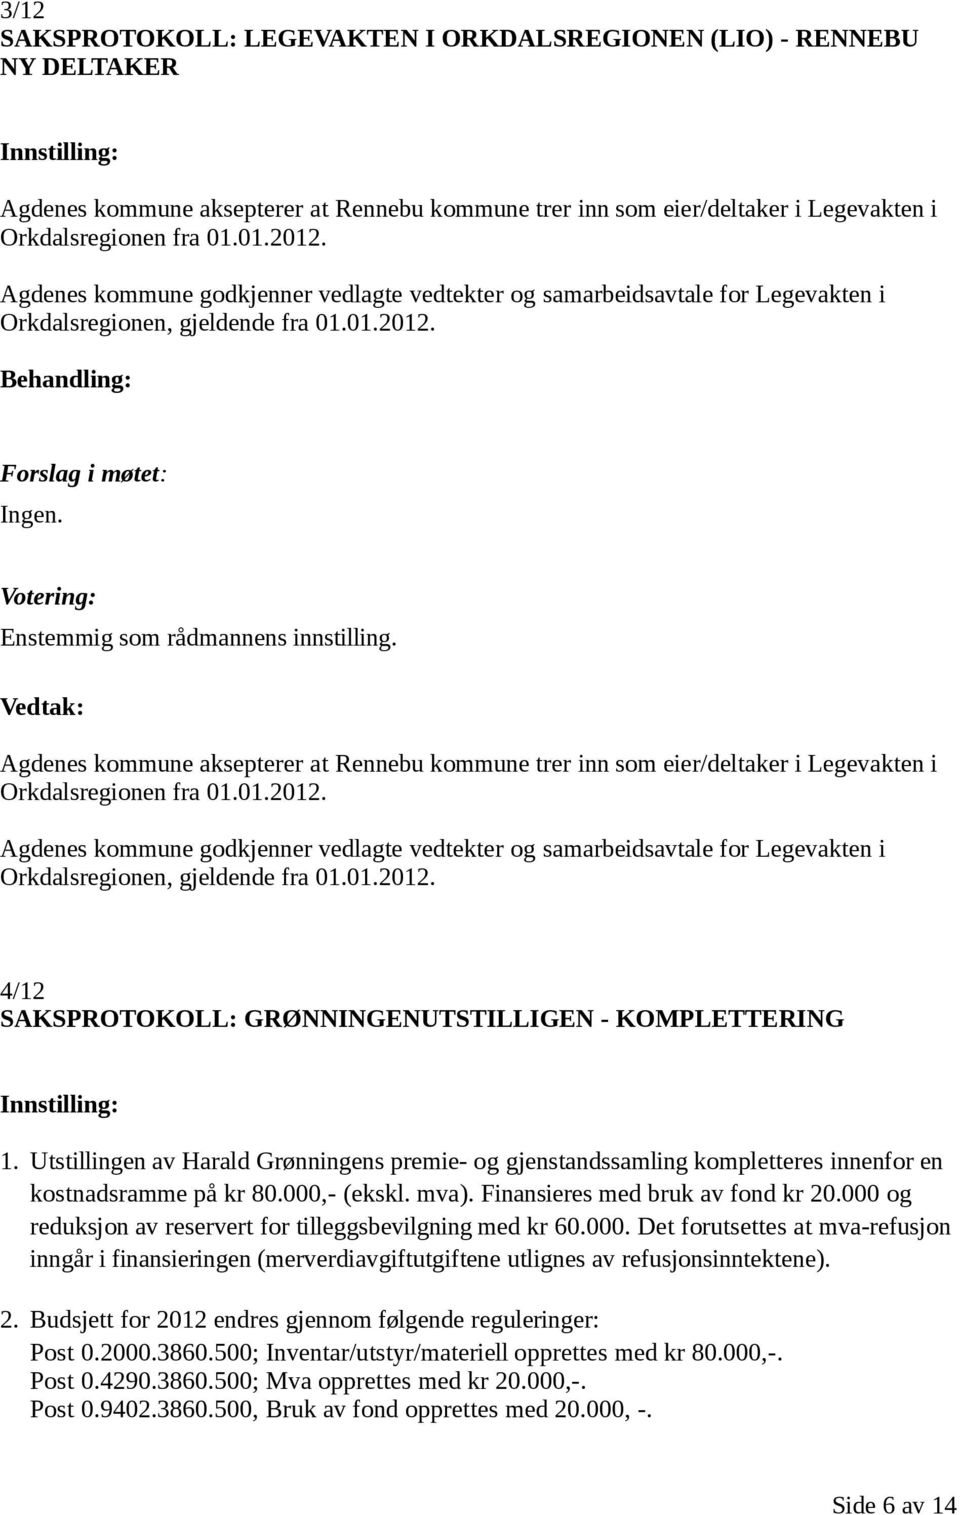 Agdenes kommune aksepterer at Rennebu kommune trer inn som eier/deltaker i Legevakten i Orkdalsregionen fra 01.01.2012.